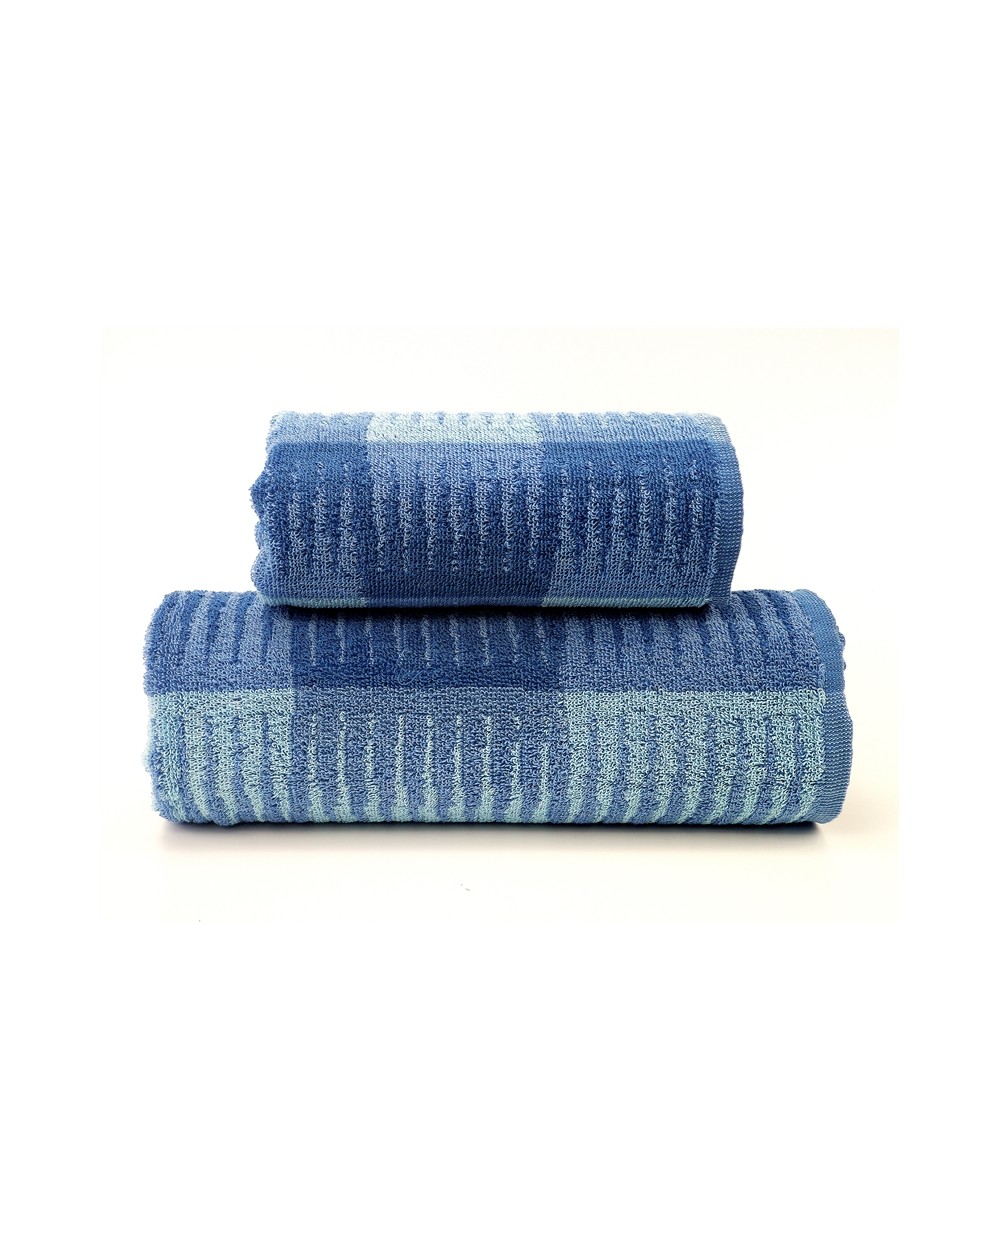 Ręcznik bawełna 50x90 Hammer niebieski